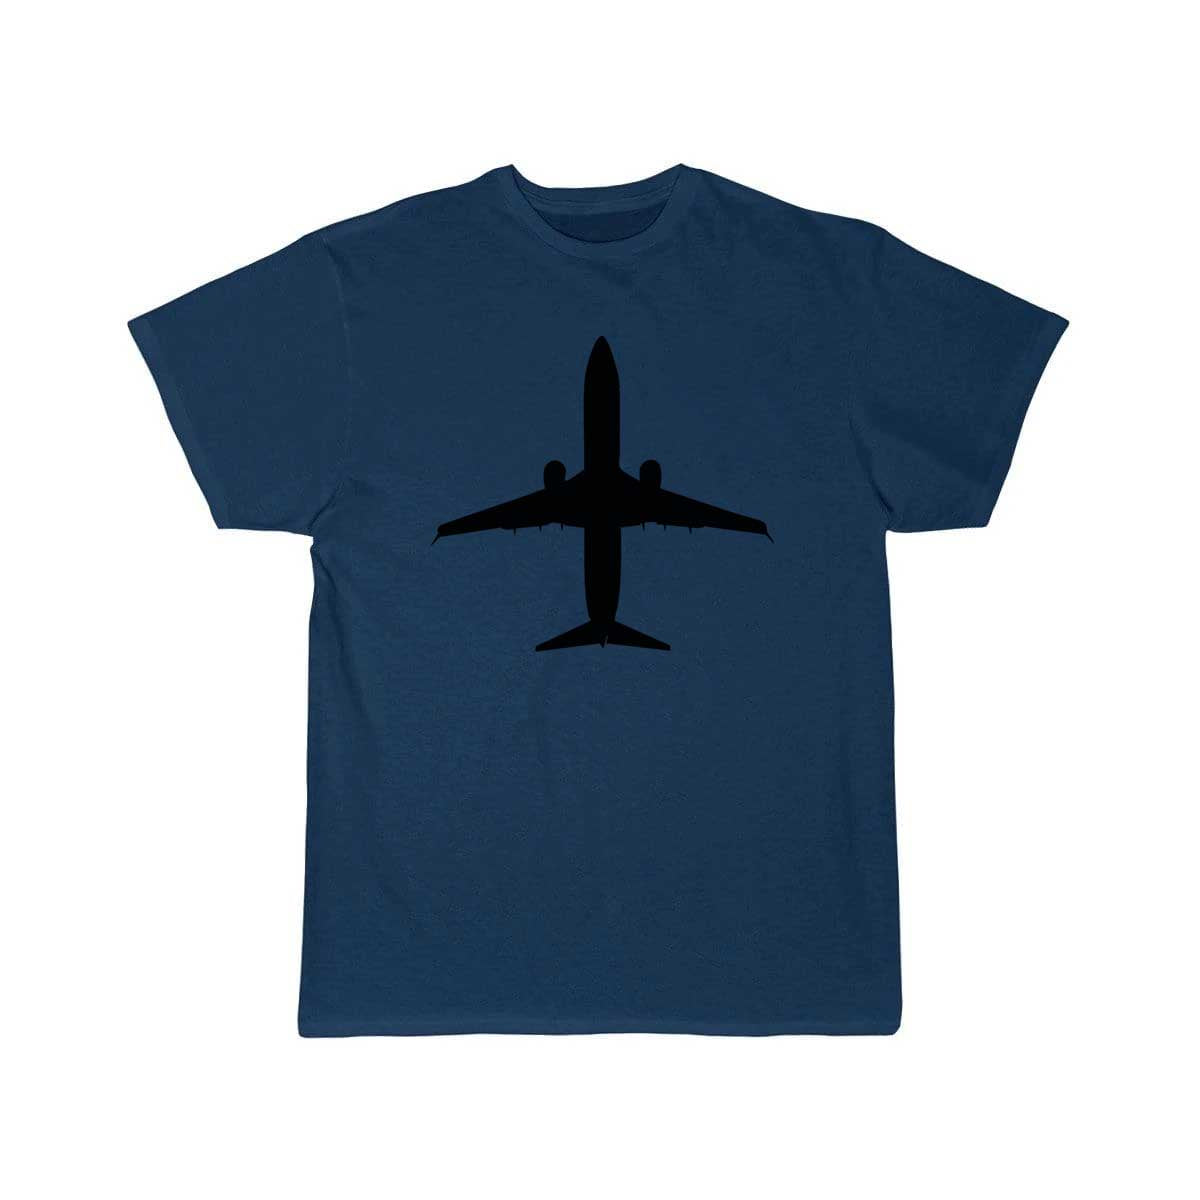 Airplane Fighter Jet Pilot Gift Idea T Shirt THE AV8R